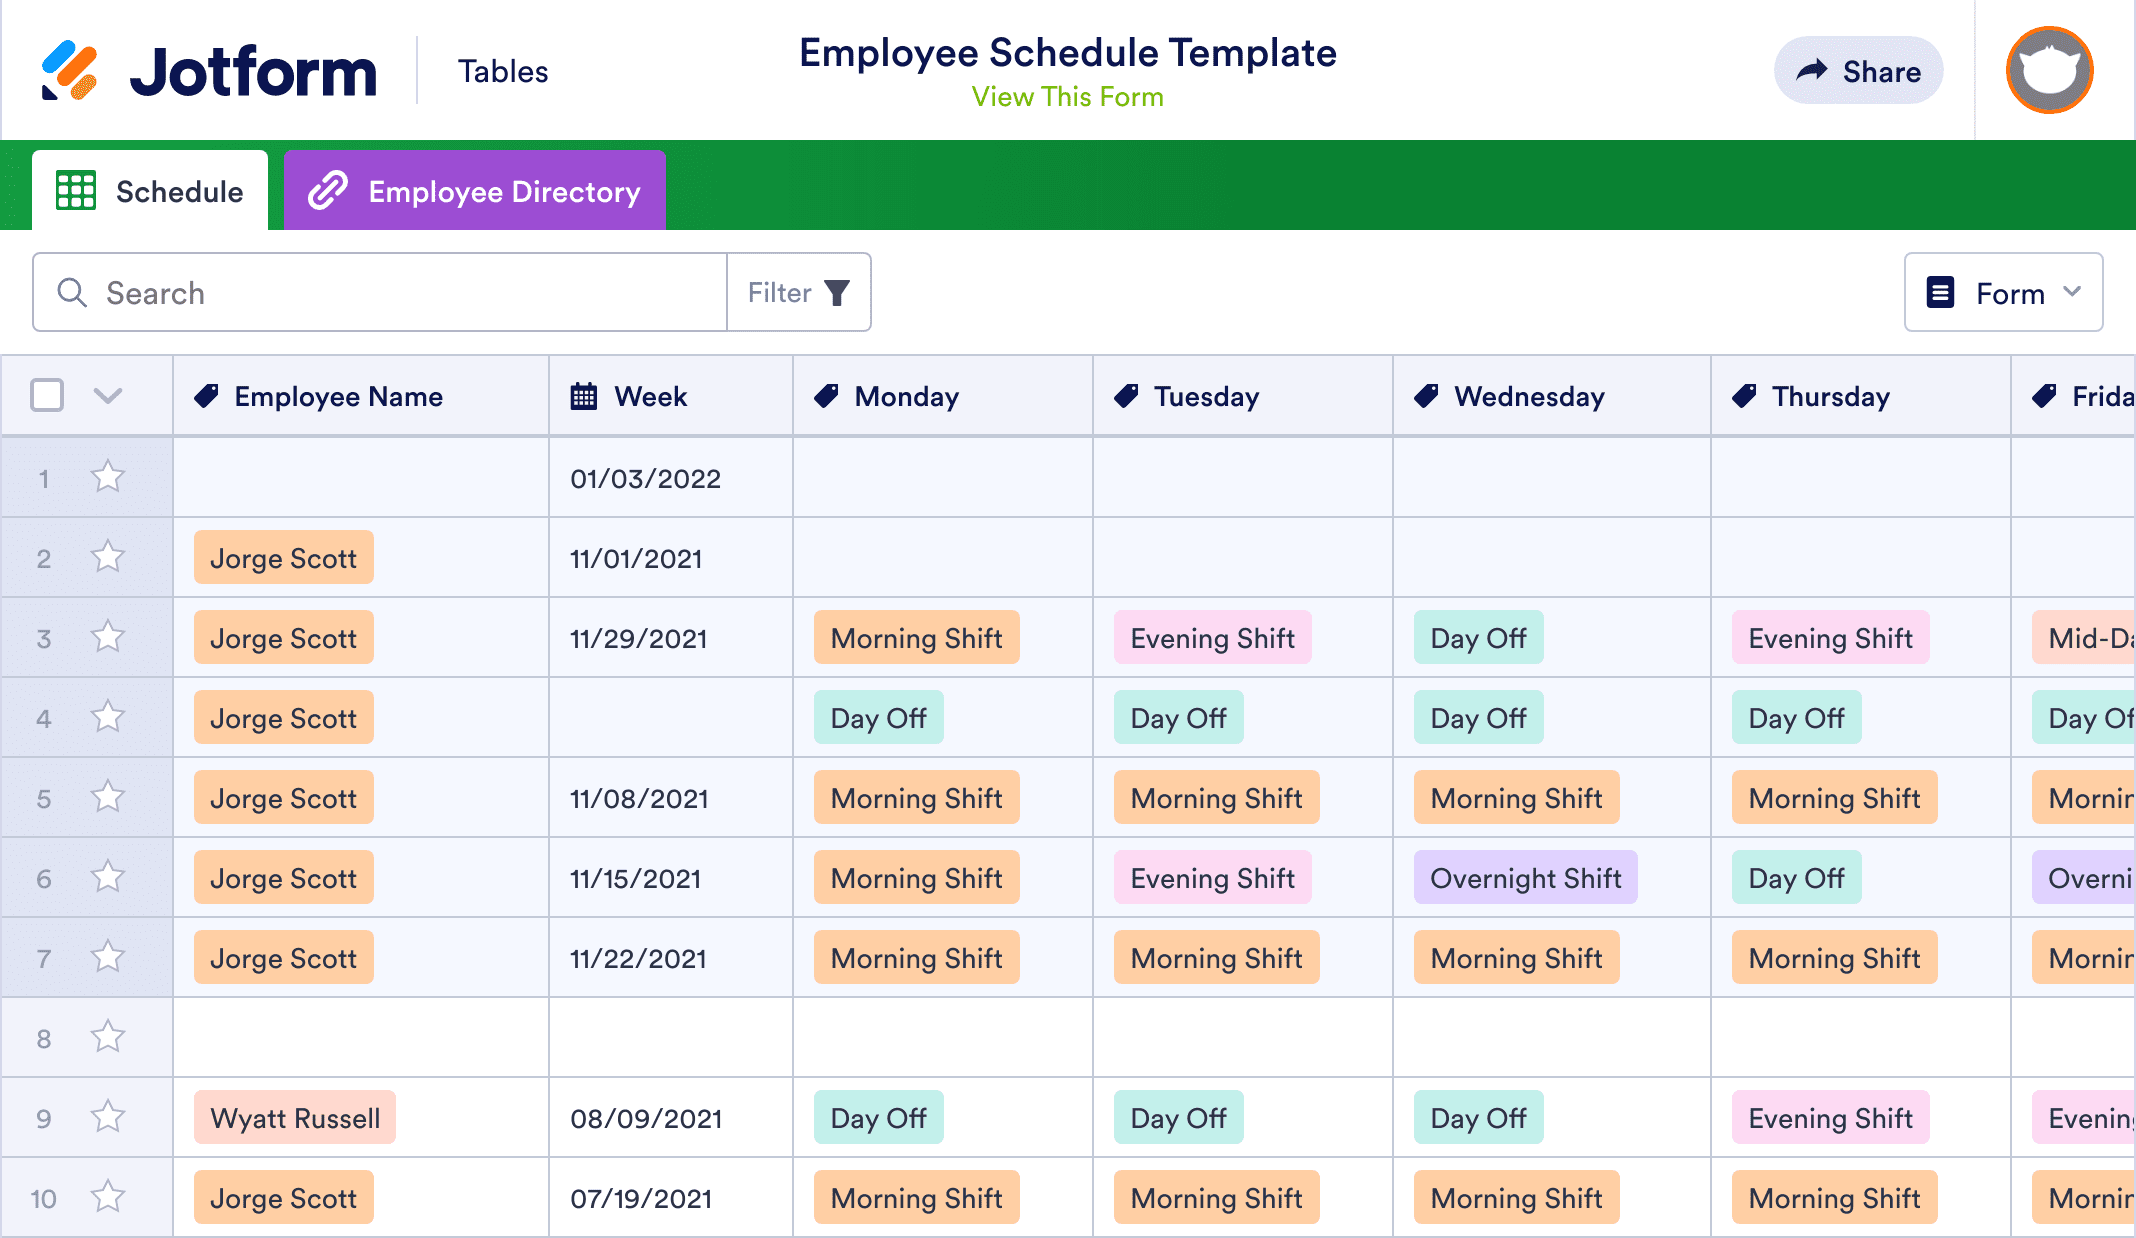 Employee Schedule Template | Jotform Tables